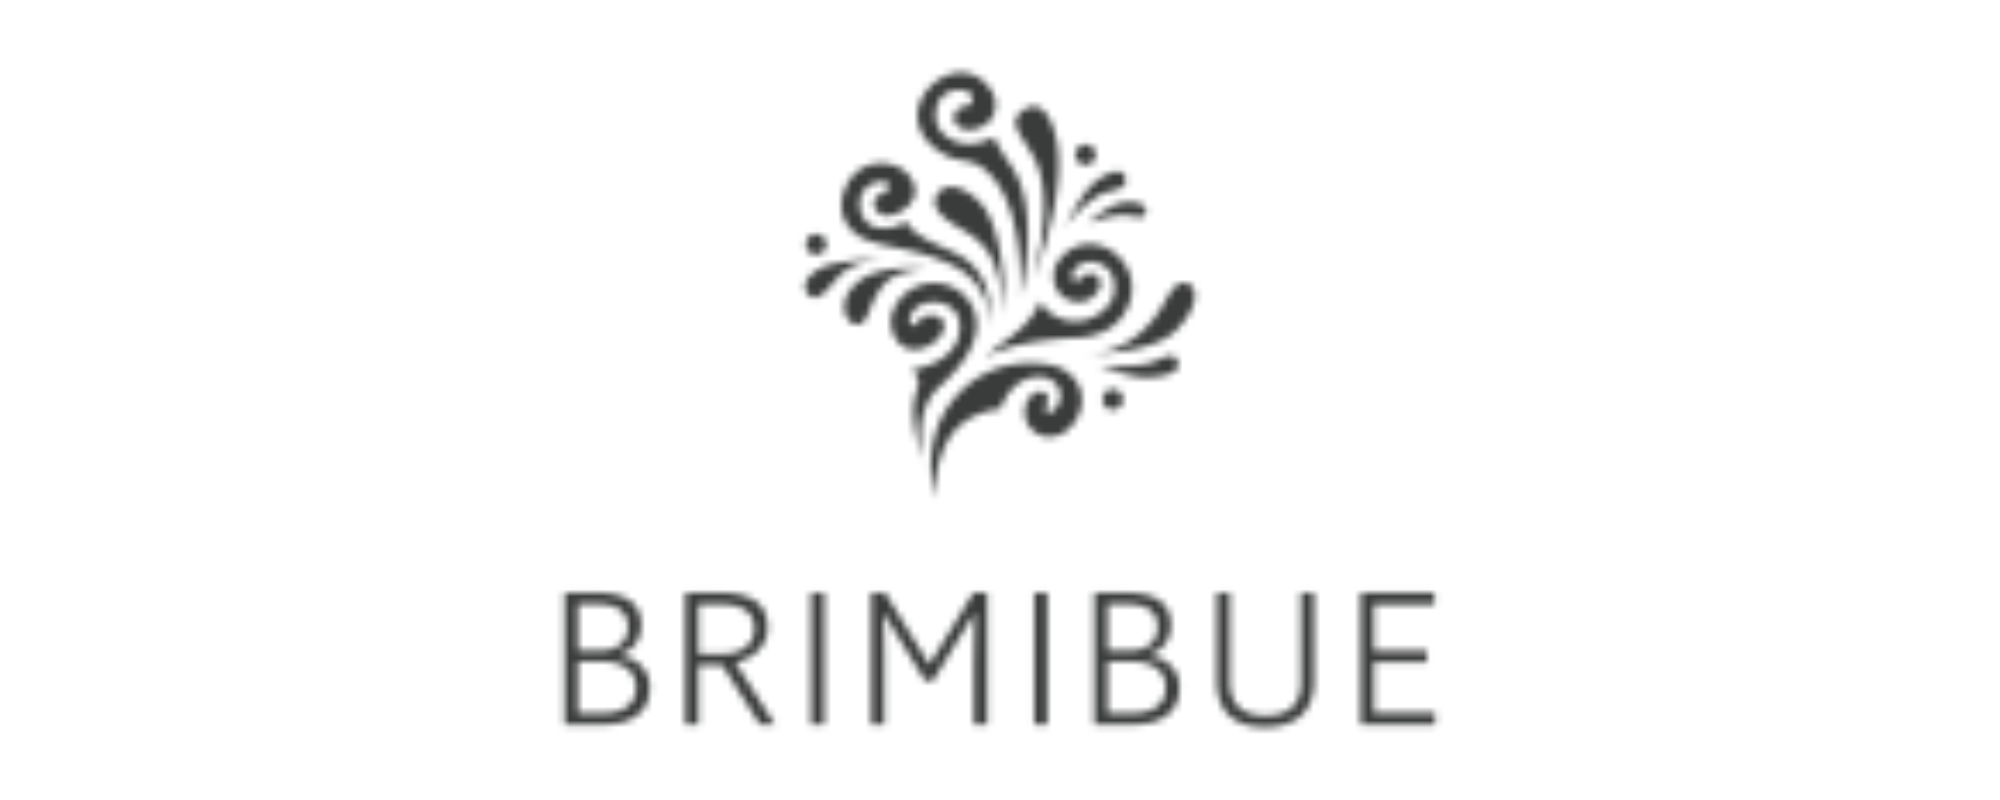 Brimibue